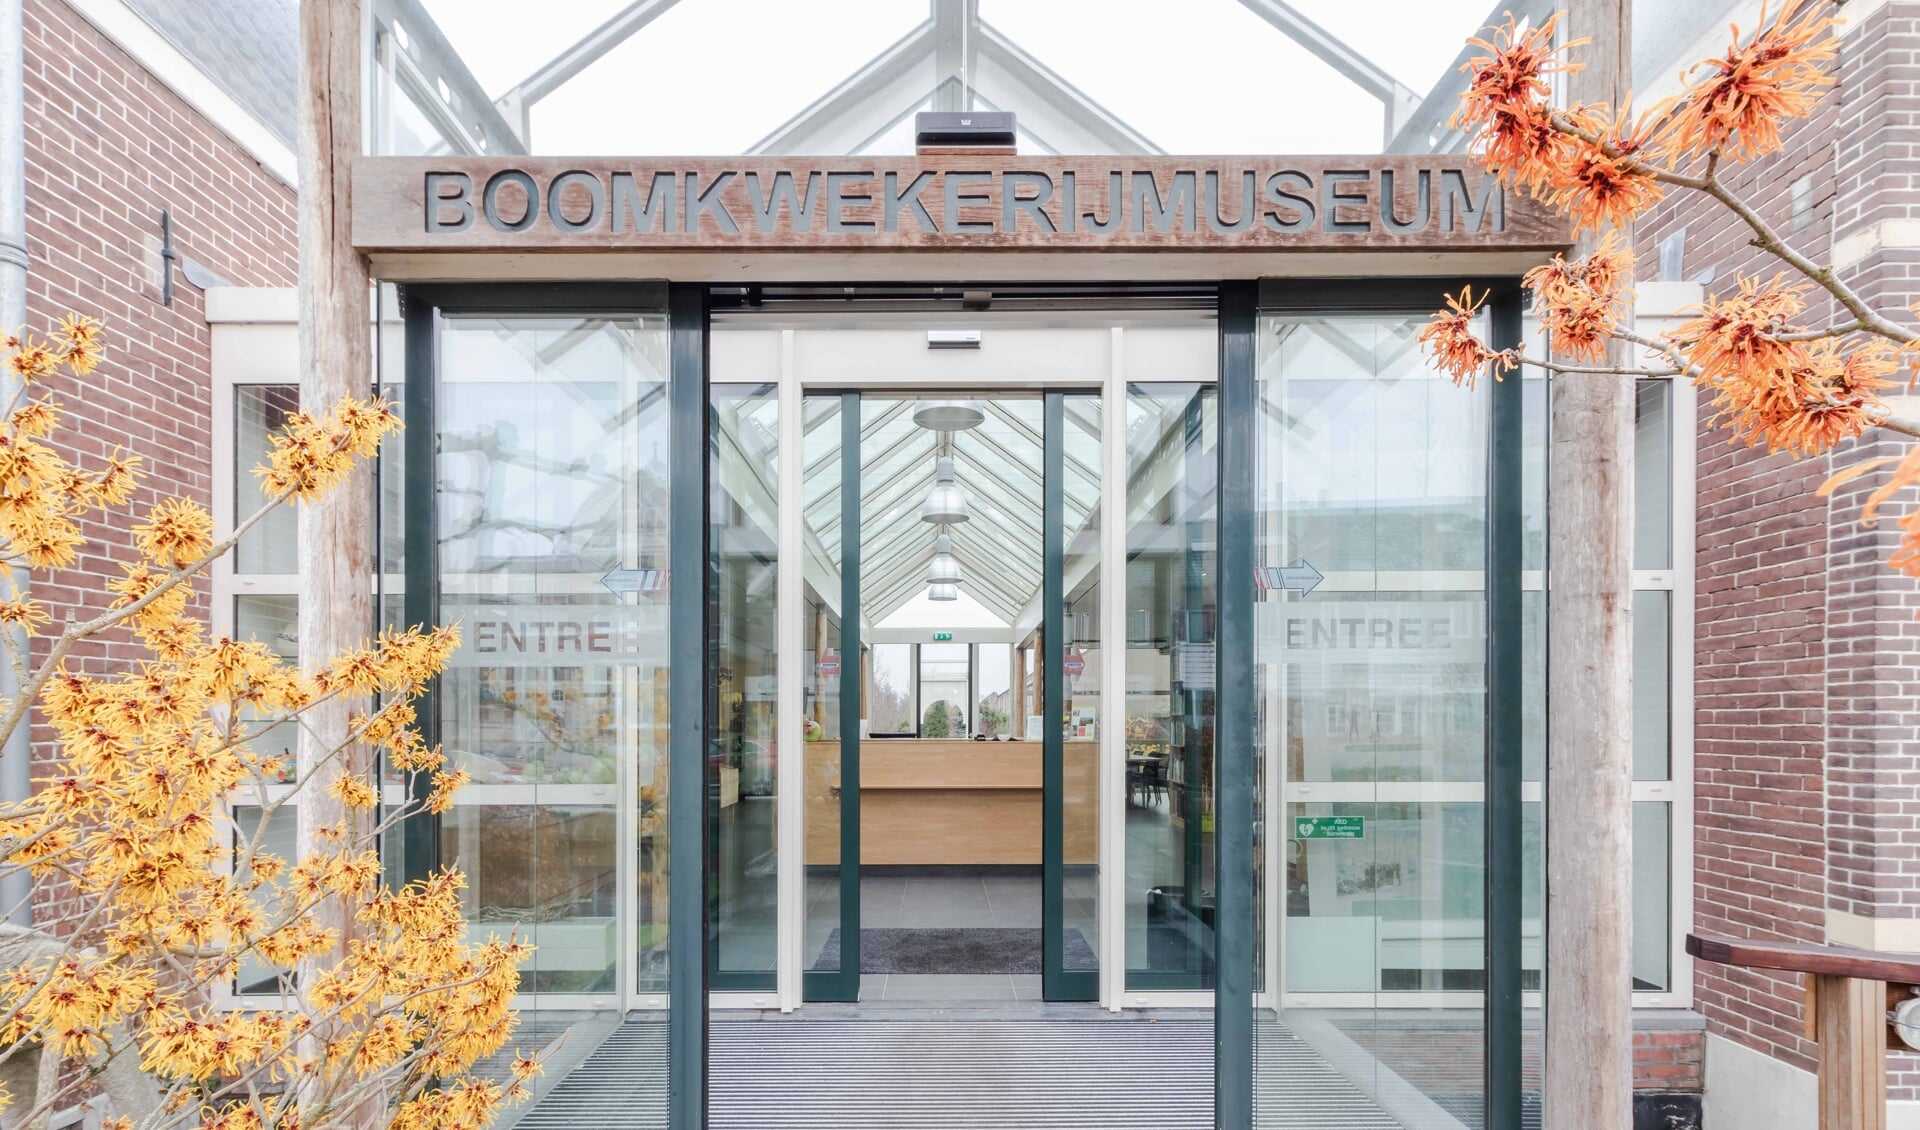 De entree van het Boomkwekerijmuseum.